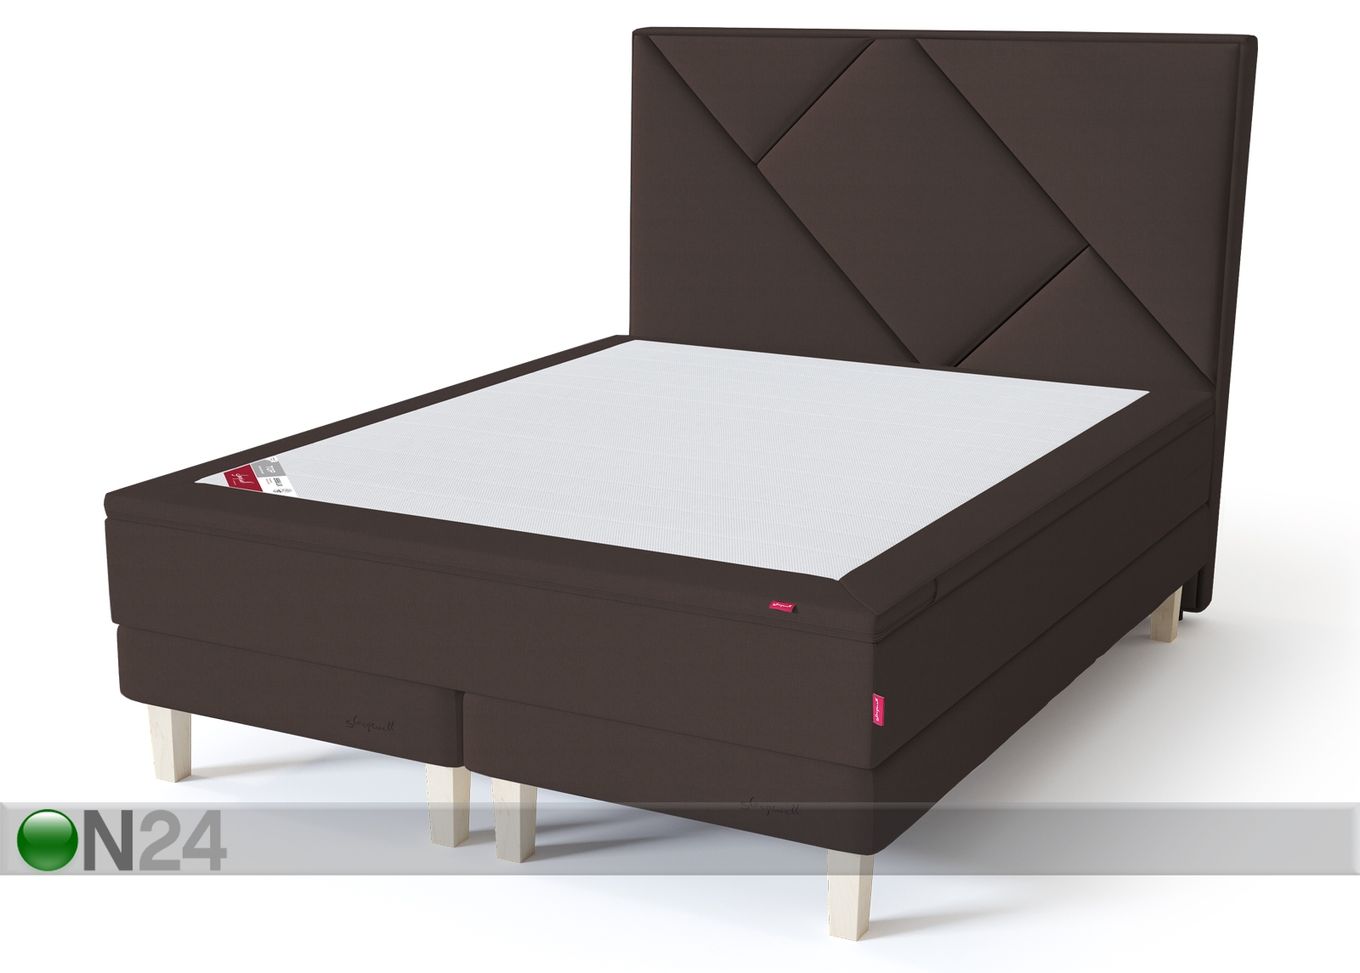 Sleepwell Red континентальная кровать на раме жёсткая 160x200 cm увеличить